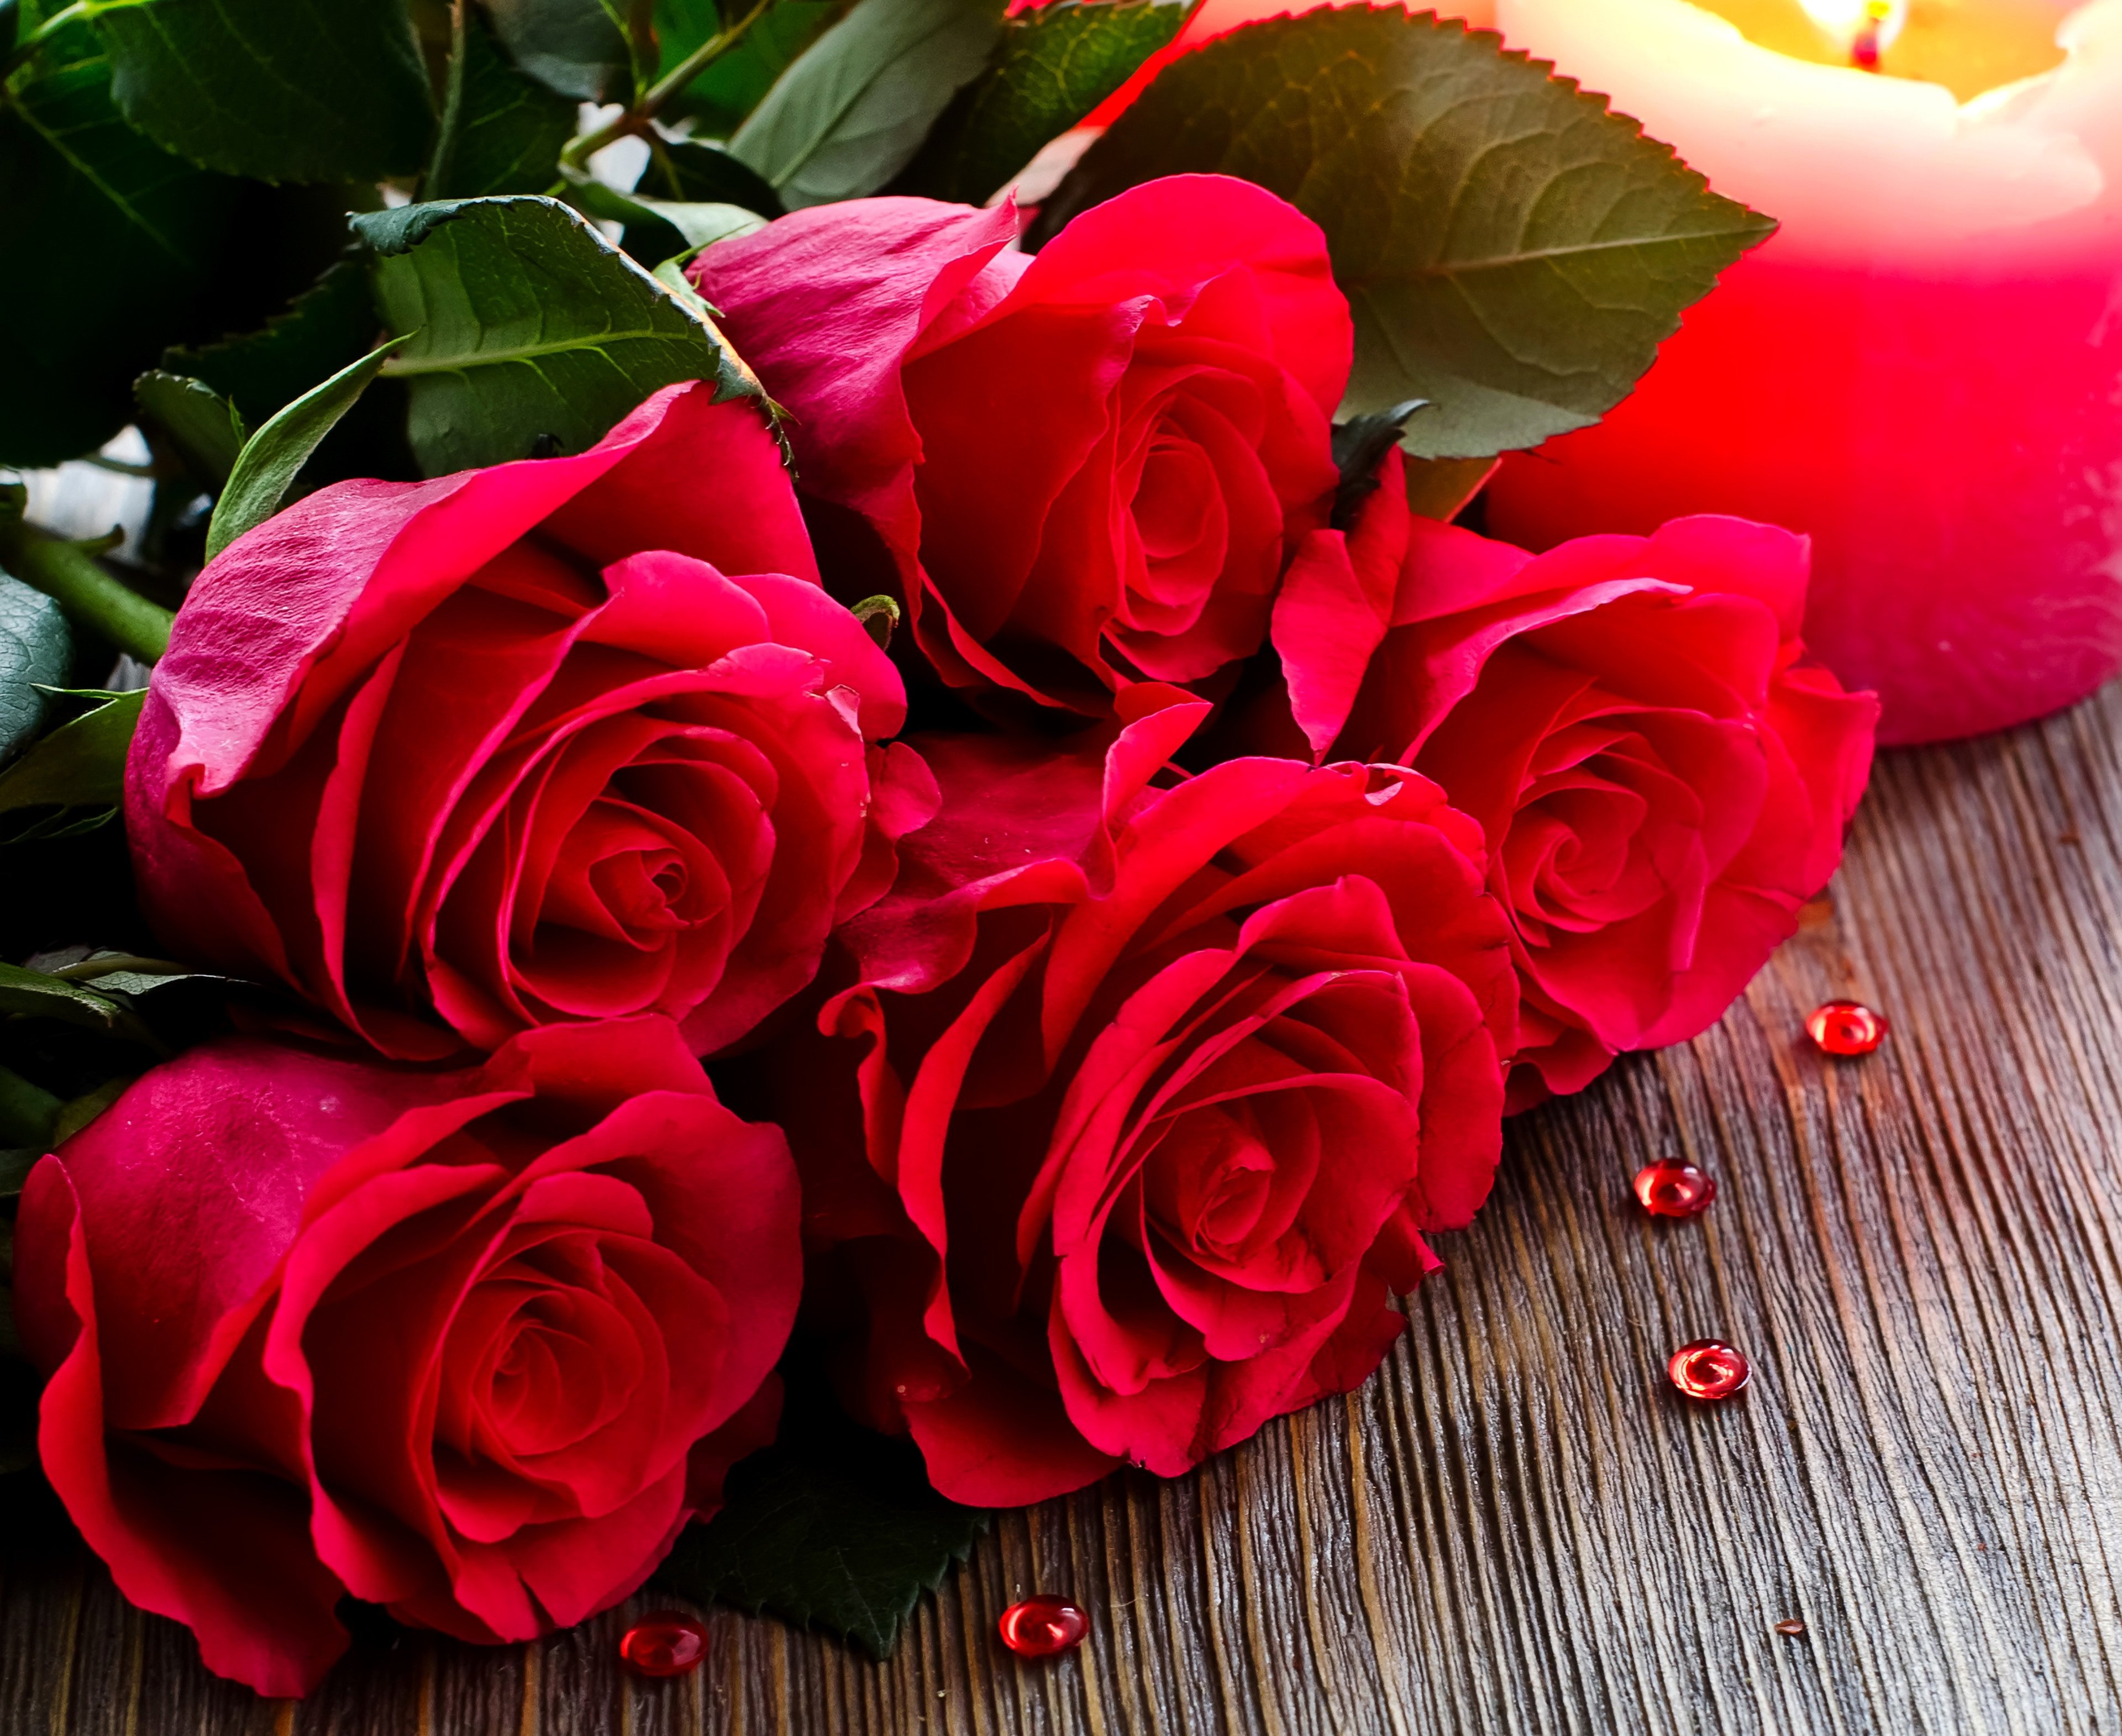 행복한 결혼 생활 벽지,꽃,정원 장미,장미,꽃잎,빨간